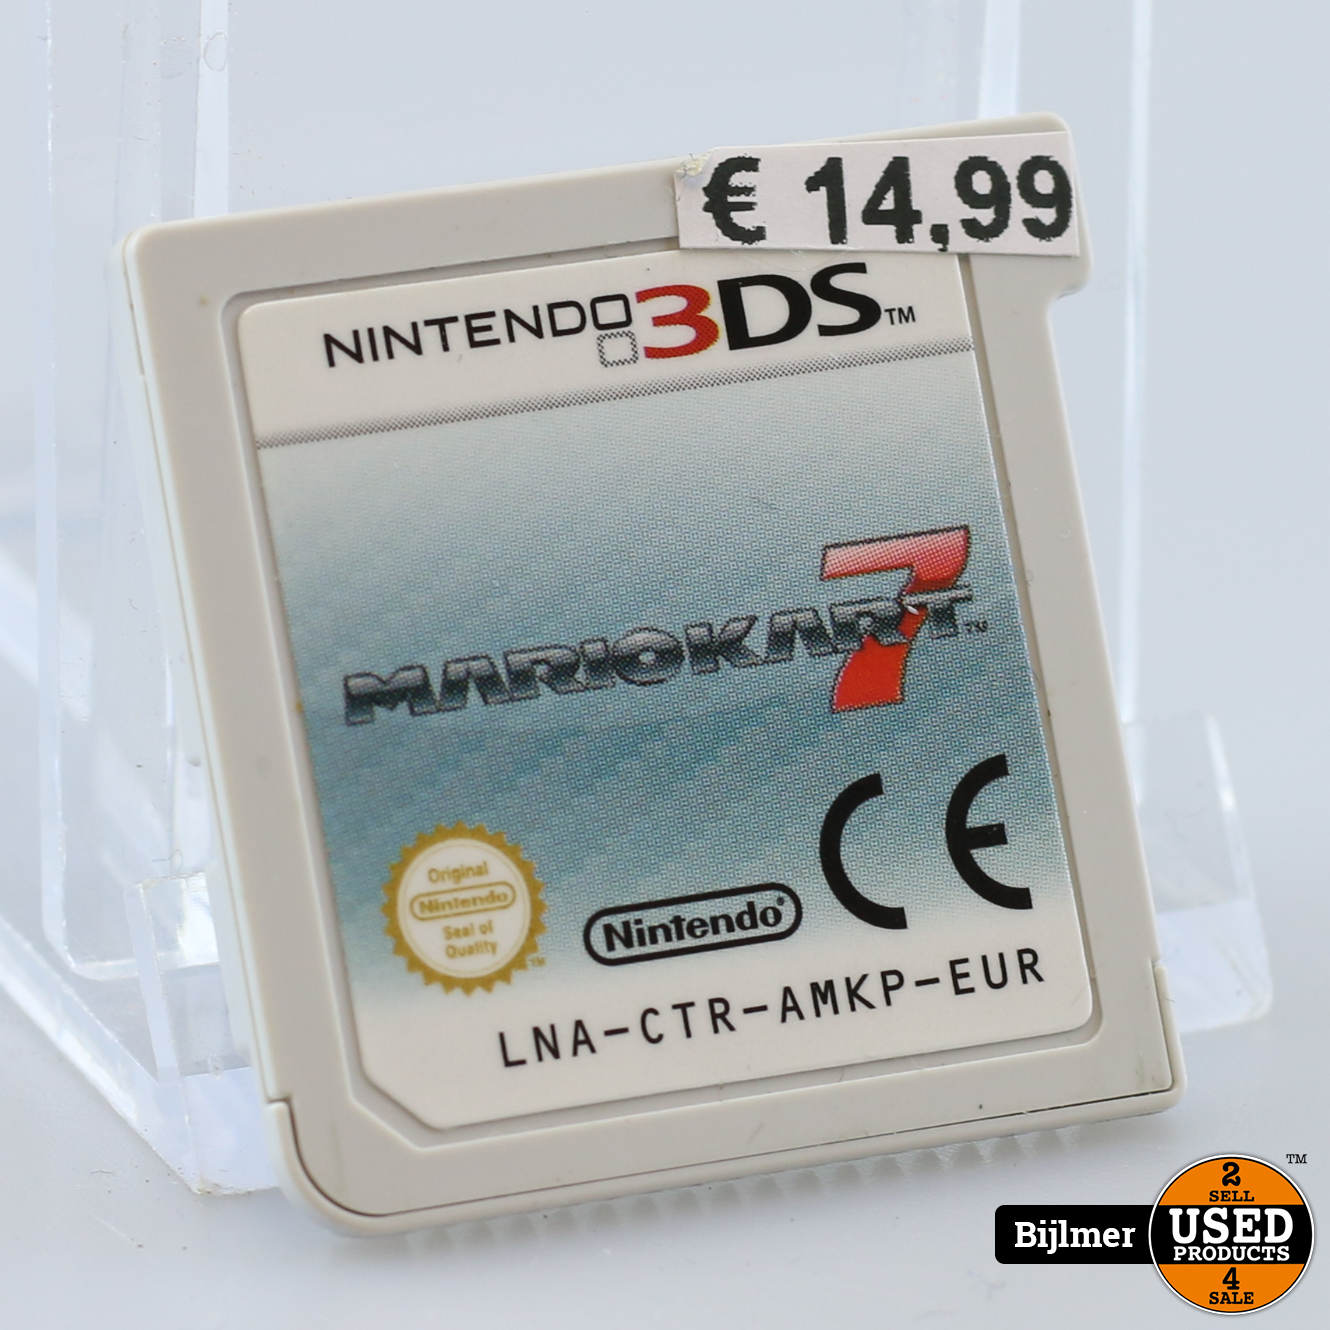 binden Waarneembaar Schaduw Nintendo 3DS Game: Mario Kart 7 (losse disc) - Used Products Amsterdam  Bijlmer